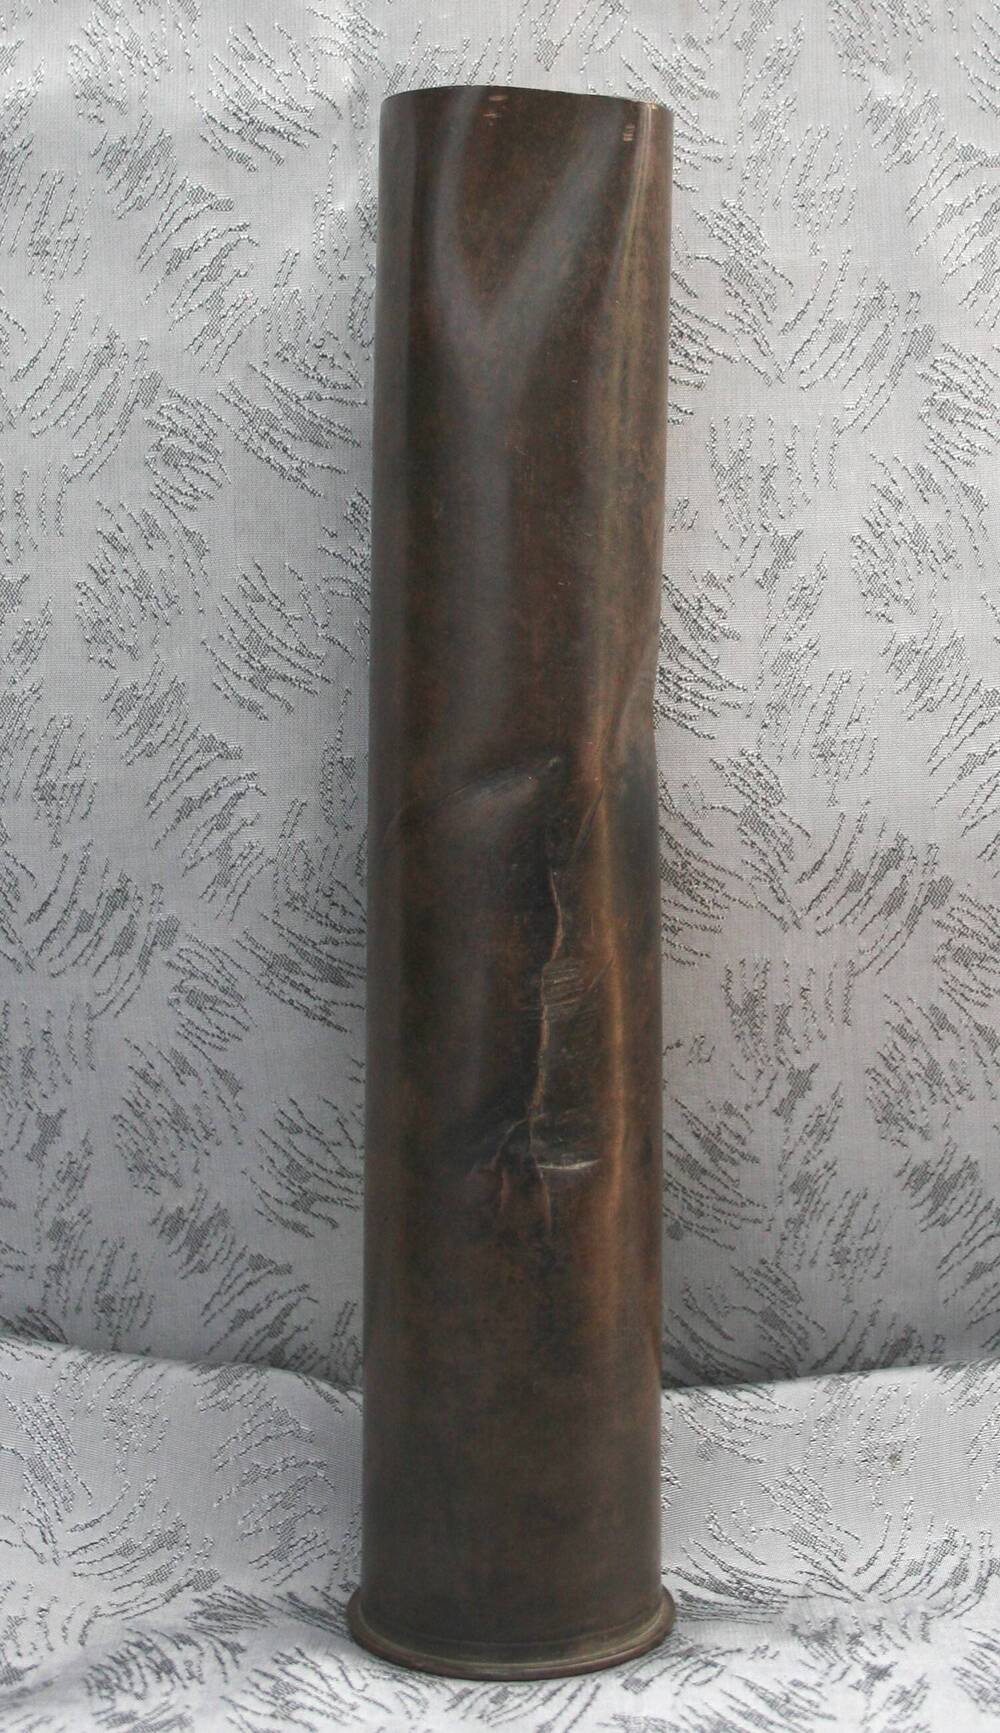 Гильза от 45 миллиметрового противотанкового орудия с надписью «Великая Отечественная война 1941-1945 г.г.».